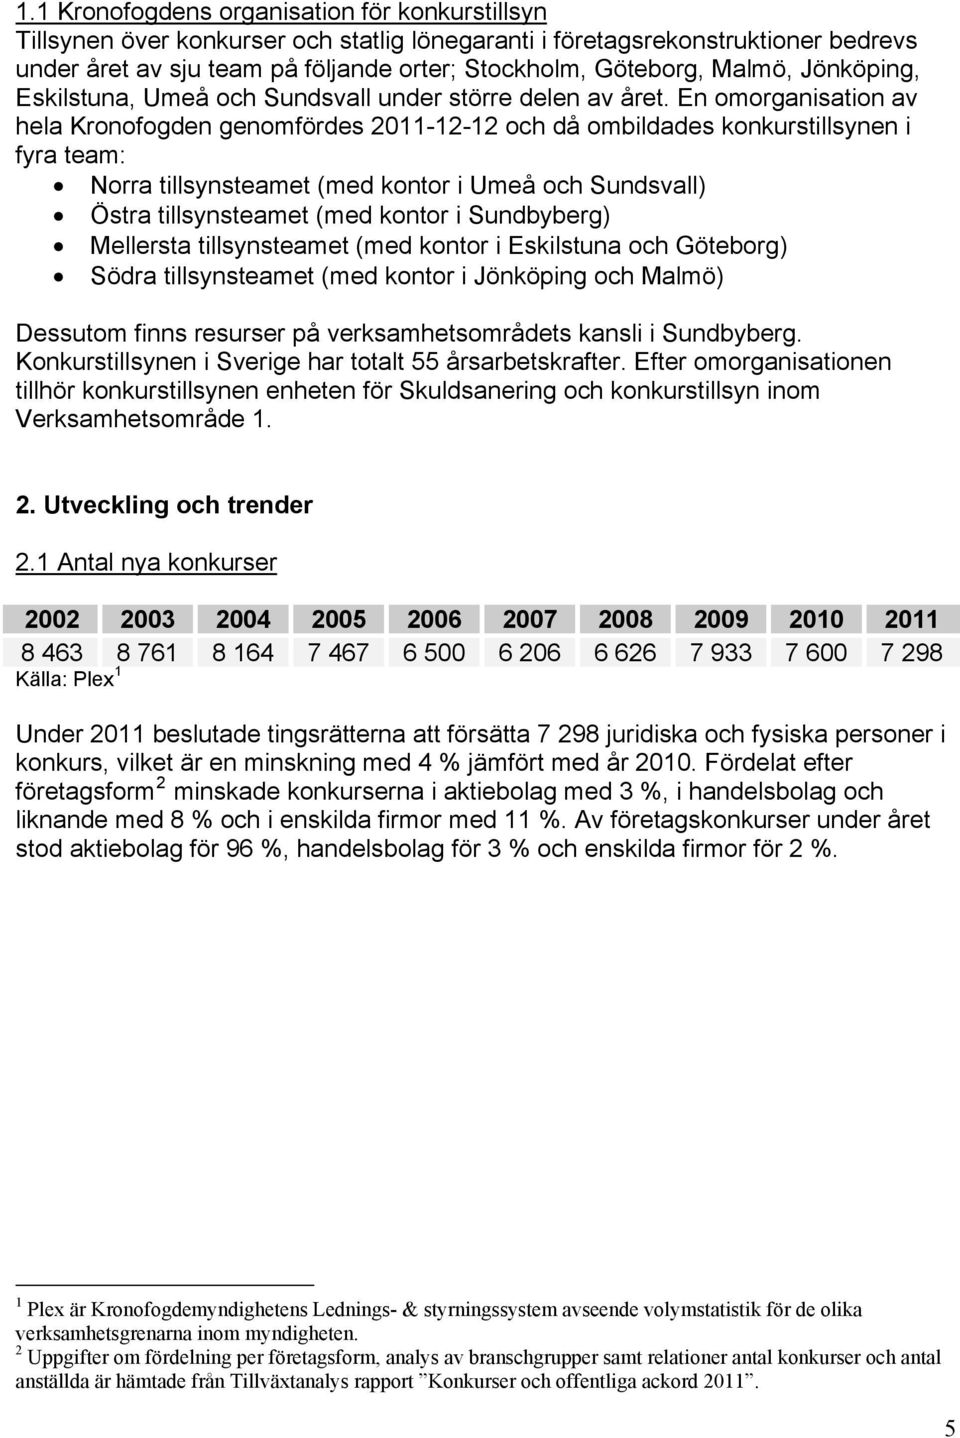 En omorganisation av hela Kronofogden genomfördes 2011-12-12 och då ombildades konkurstillsynen i fyra team: Norra tillsynsteamet (med kontor i Umeå och Sundsvall) Östra tillsynsteamet (med kontor i